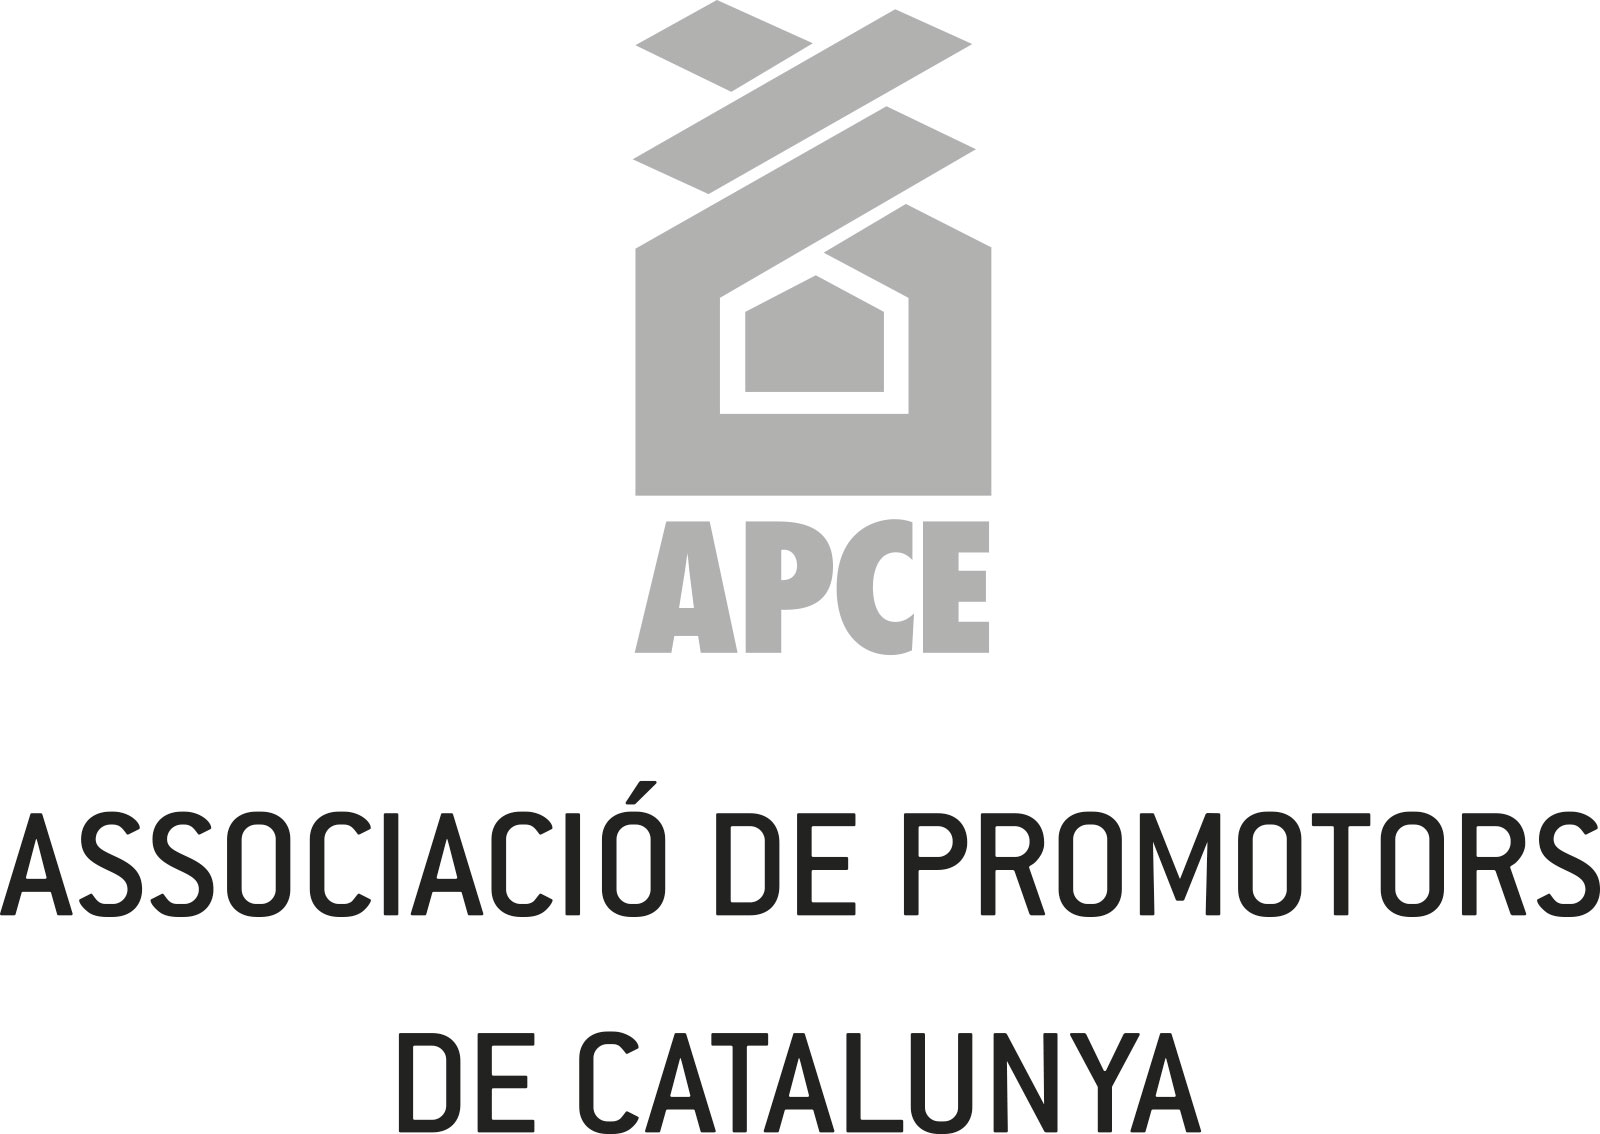 APCE-Associació de Promotors de Catalunya